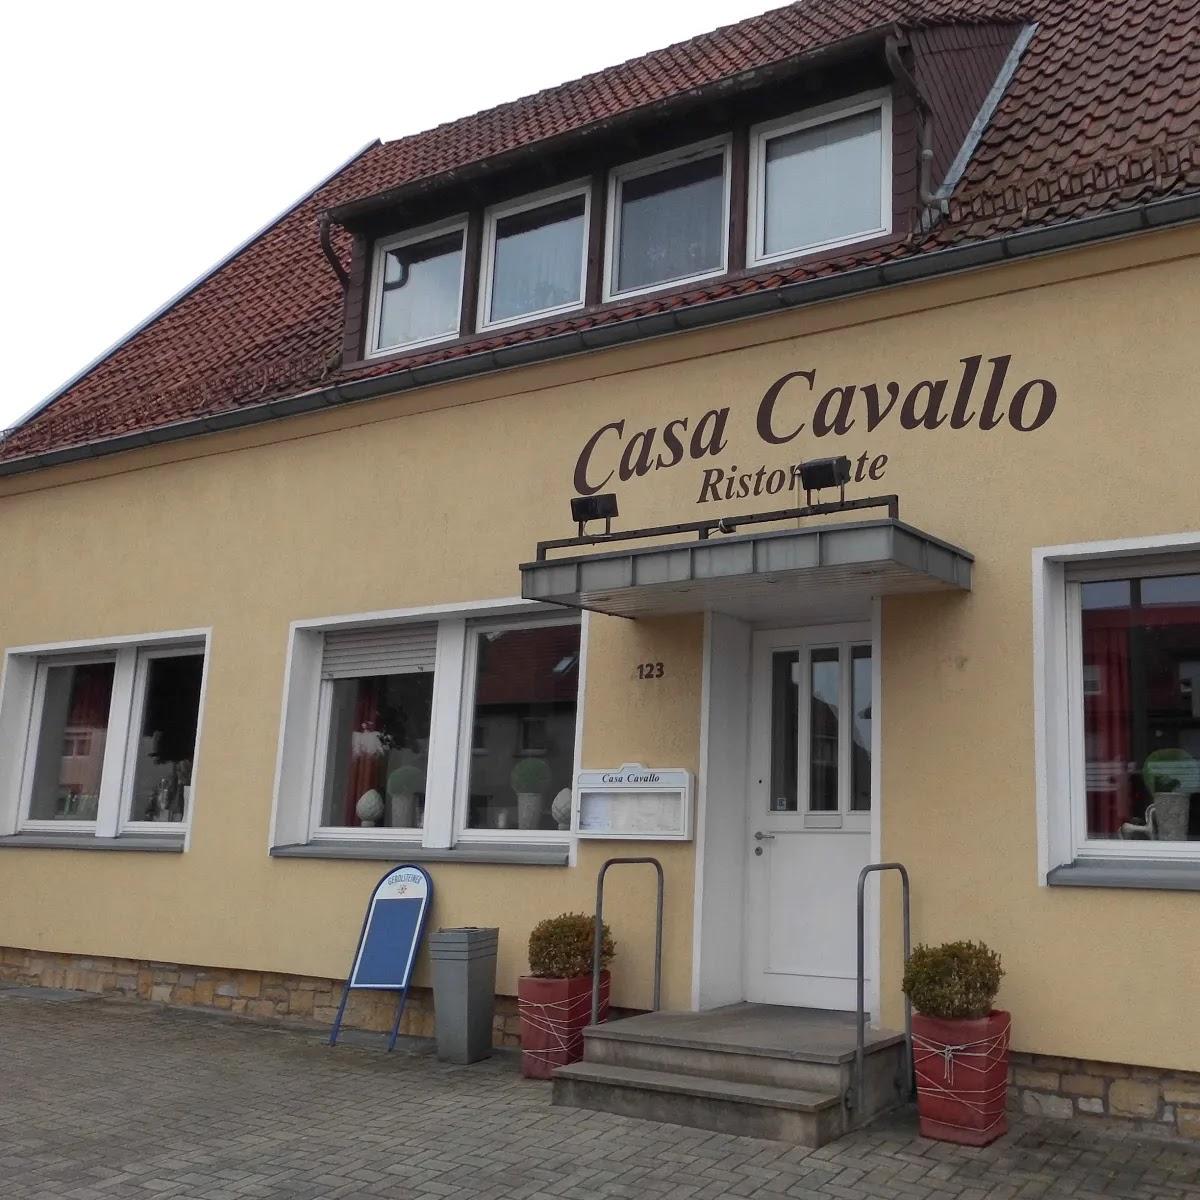 Restaurant "Casa Cavallo" in Osnabrück